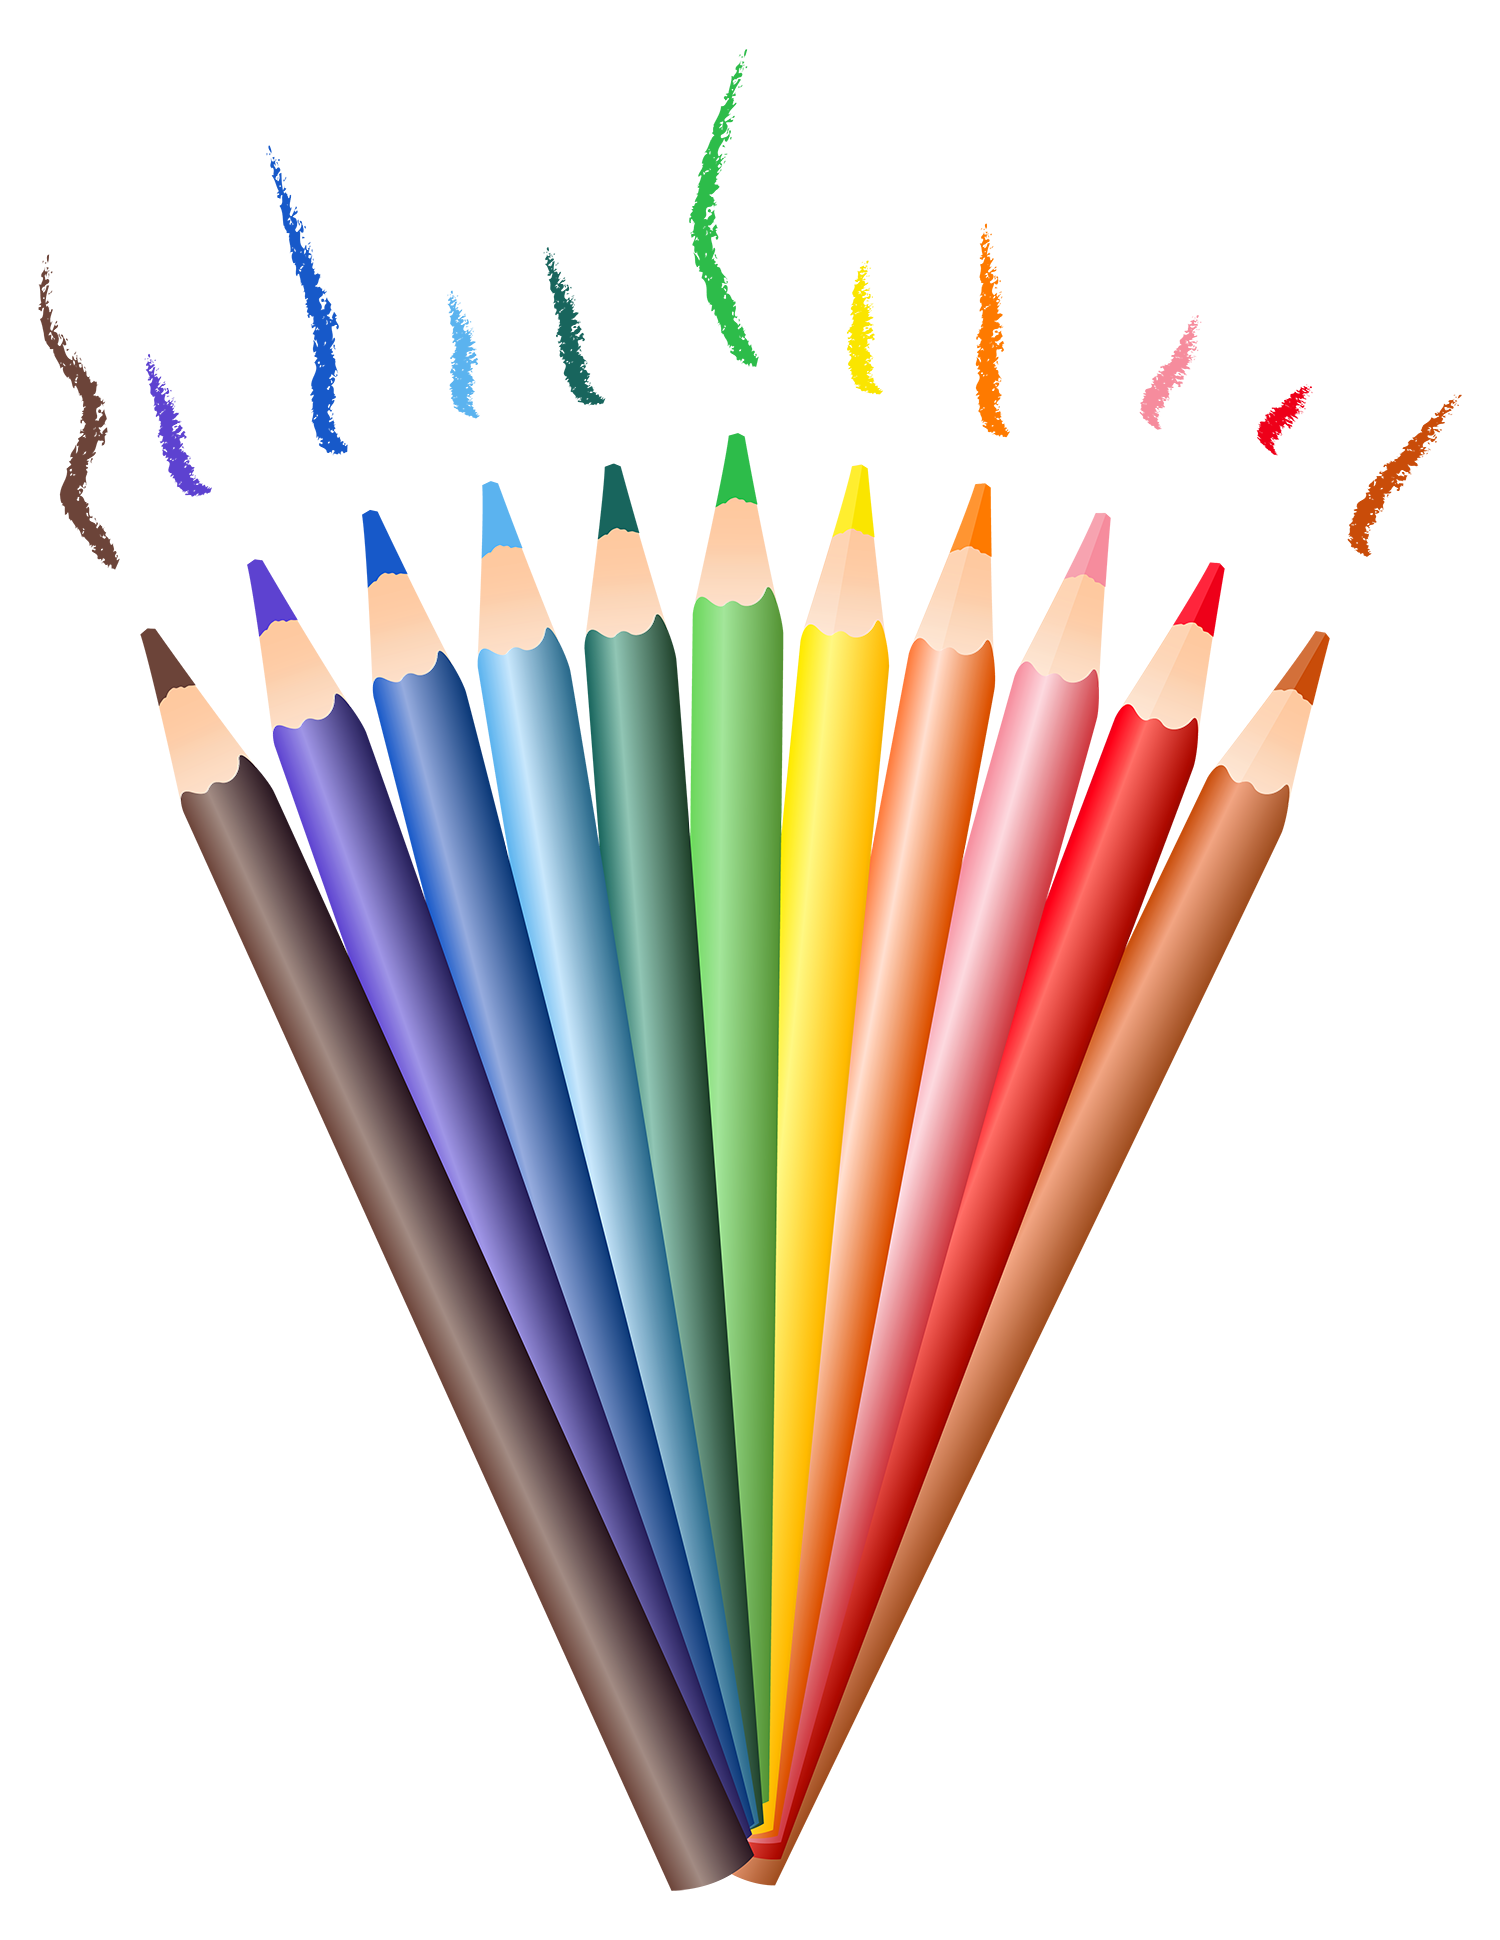 Карандаши - цветные карандаши, рисование, карандаши